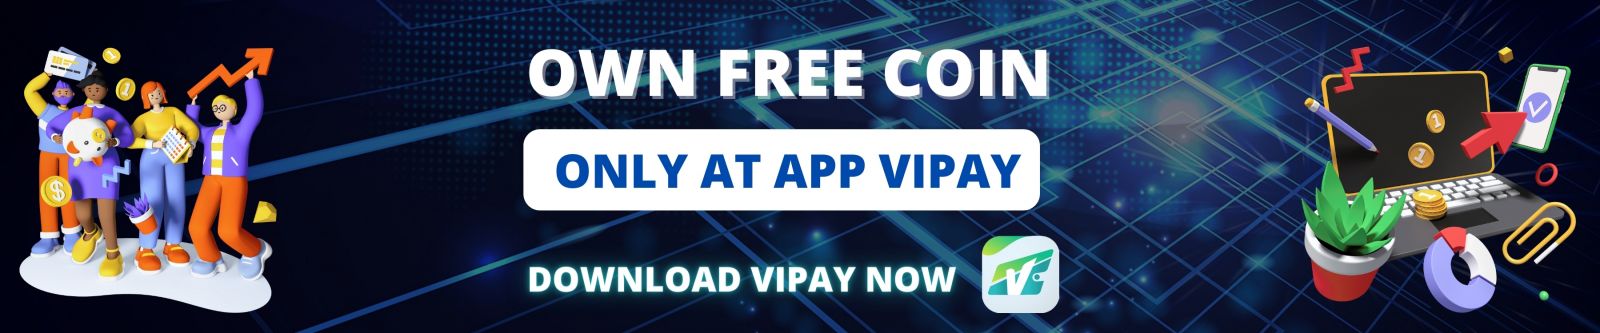 Làm sao để kiếm tiền bằng AntCoin với ví điện tử Vipay